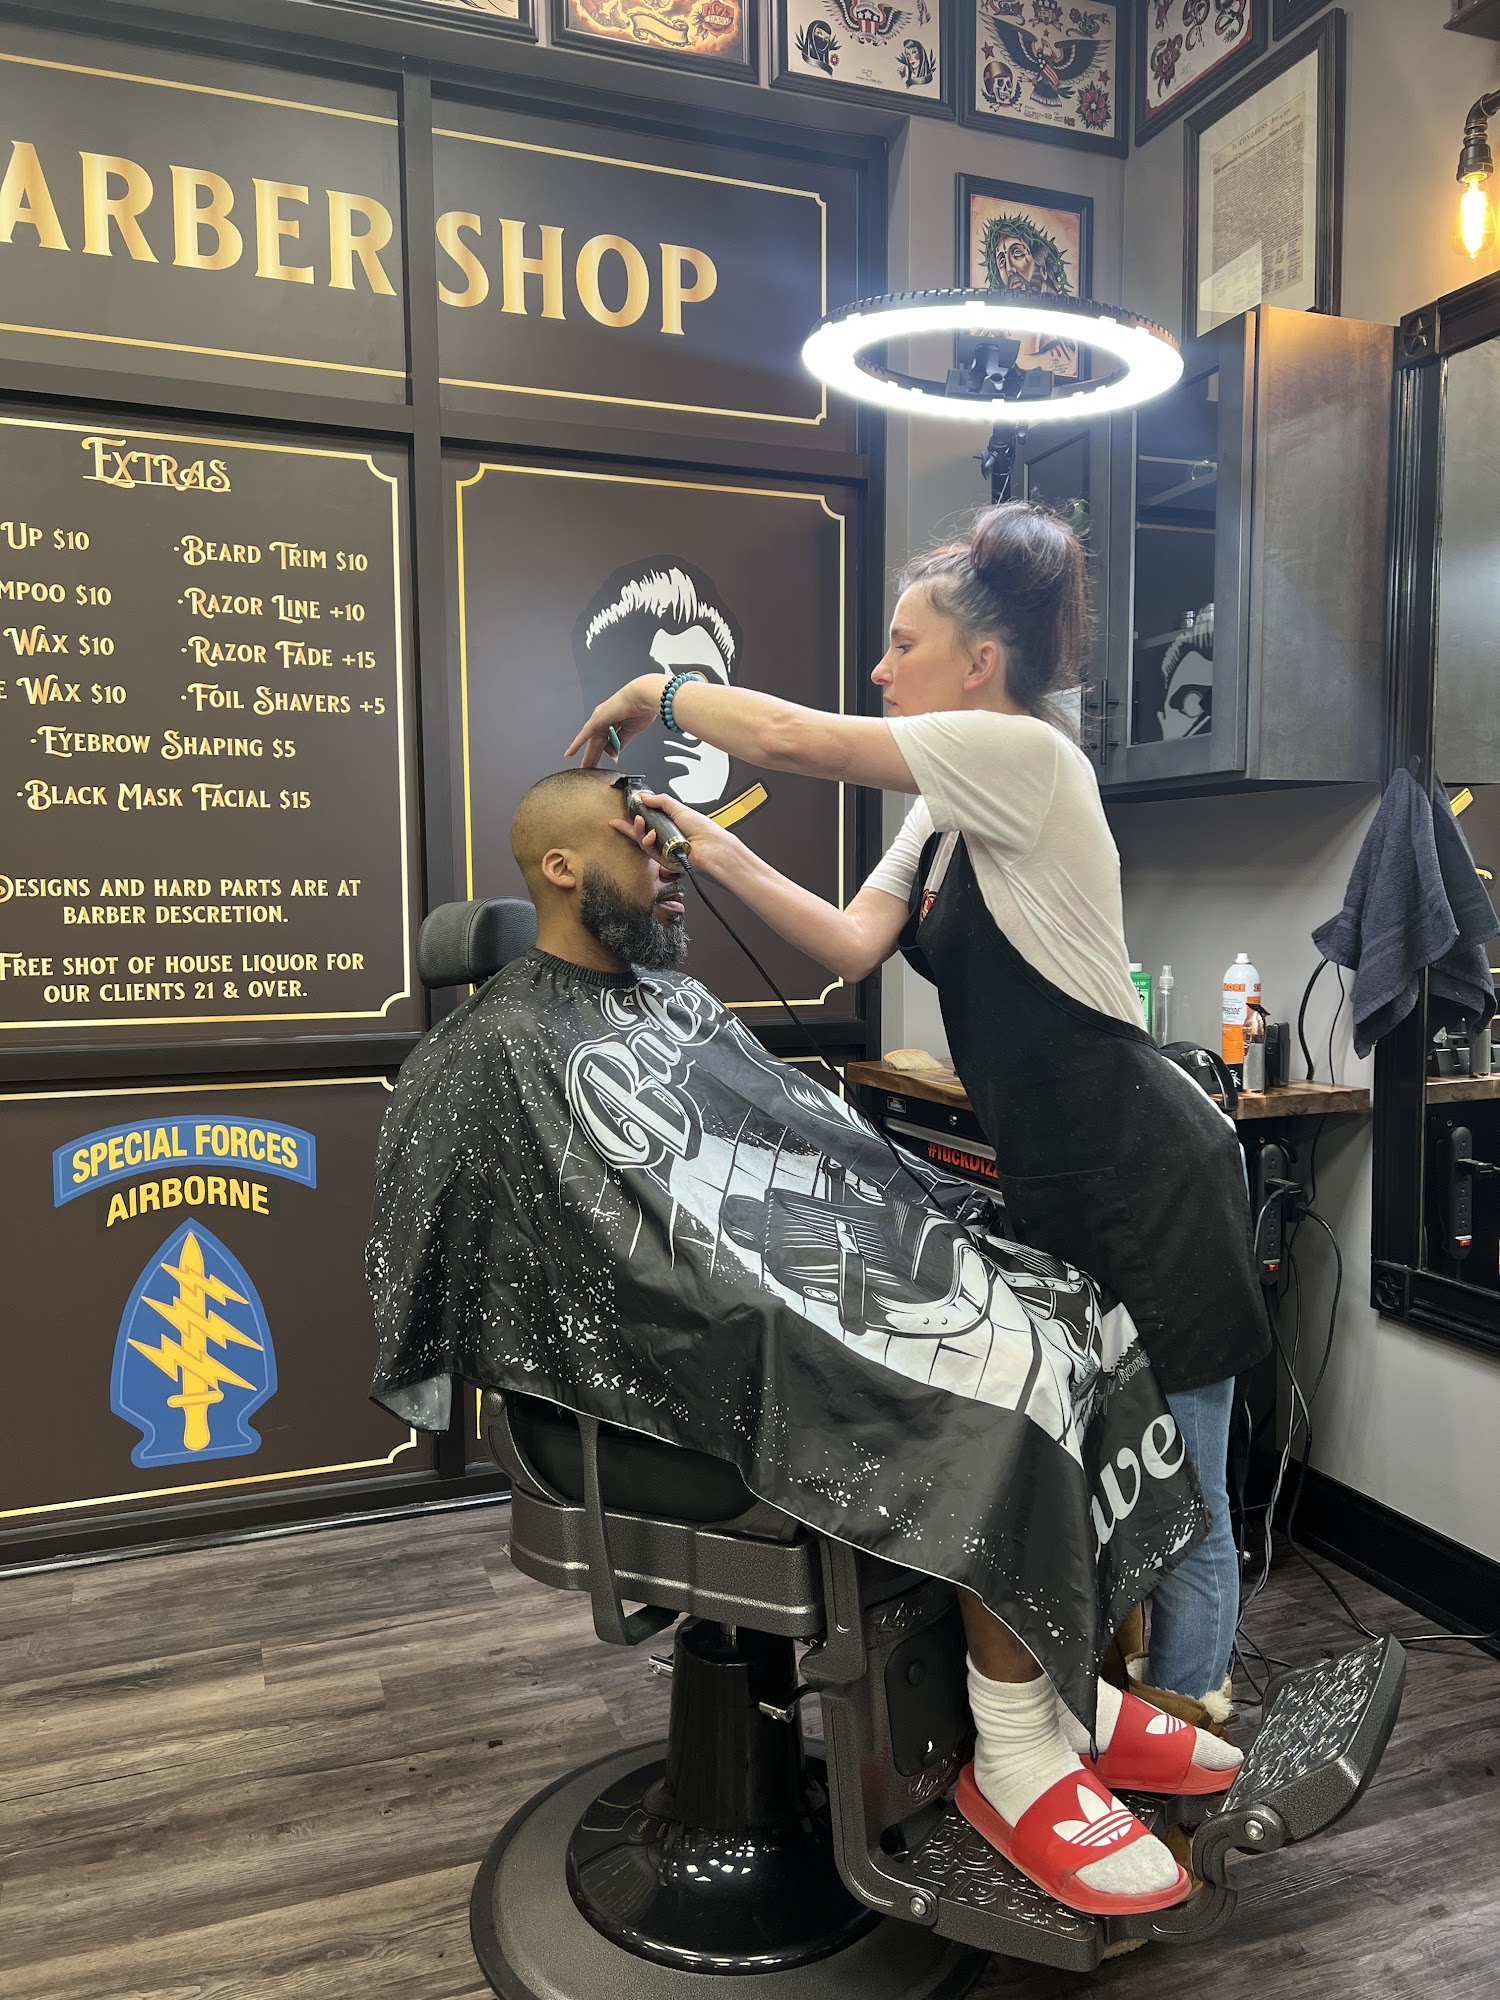 True Gentleman Barber Shop